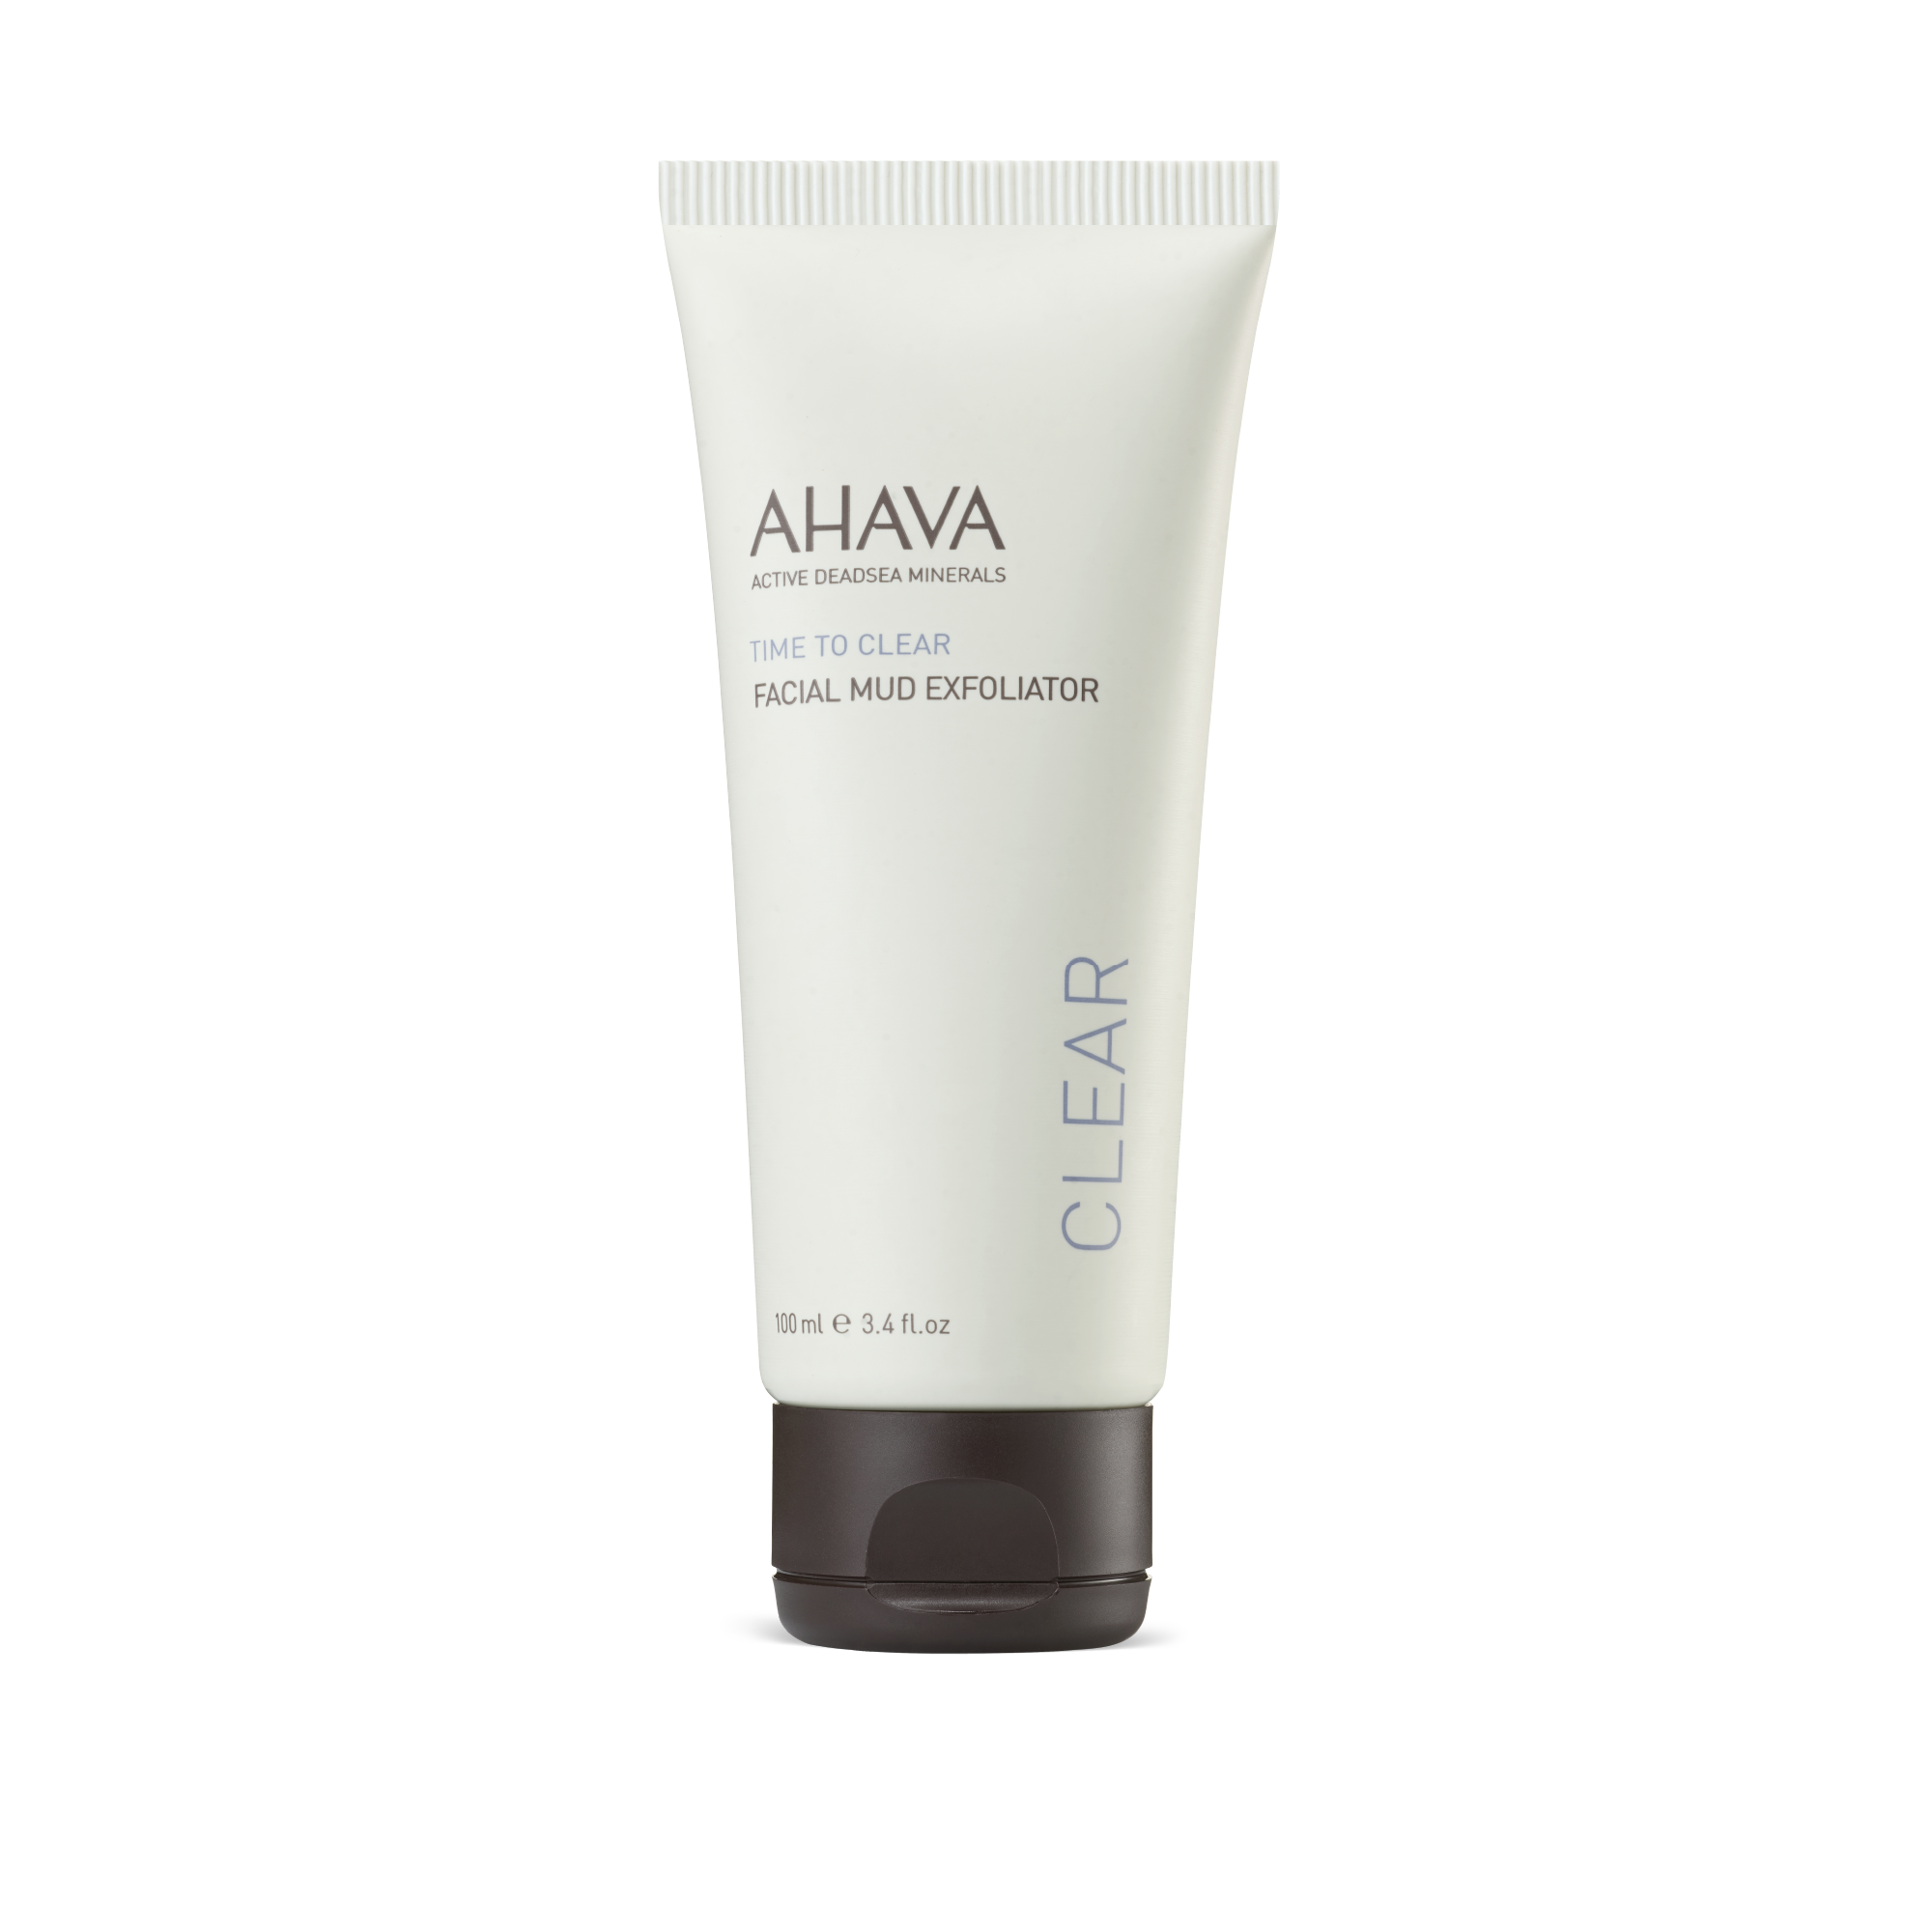 USA AHAVA® Mud Facial Exfoliator – AHAVA